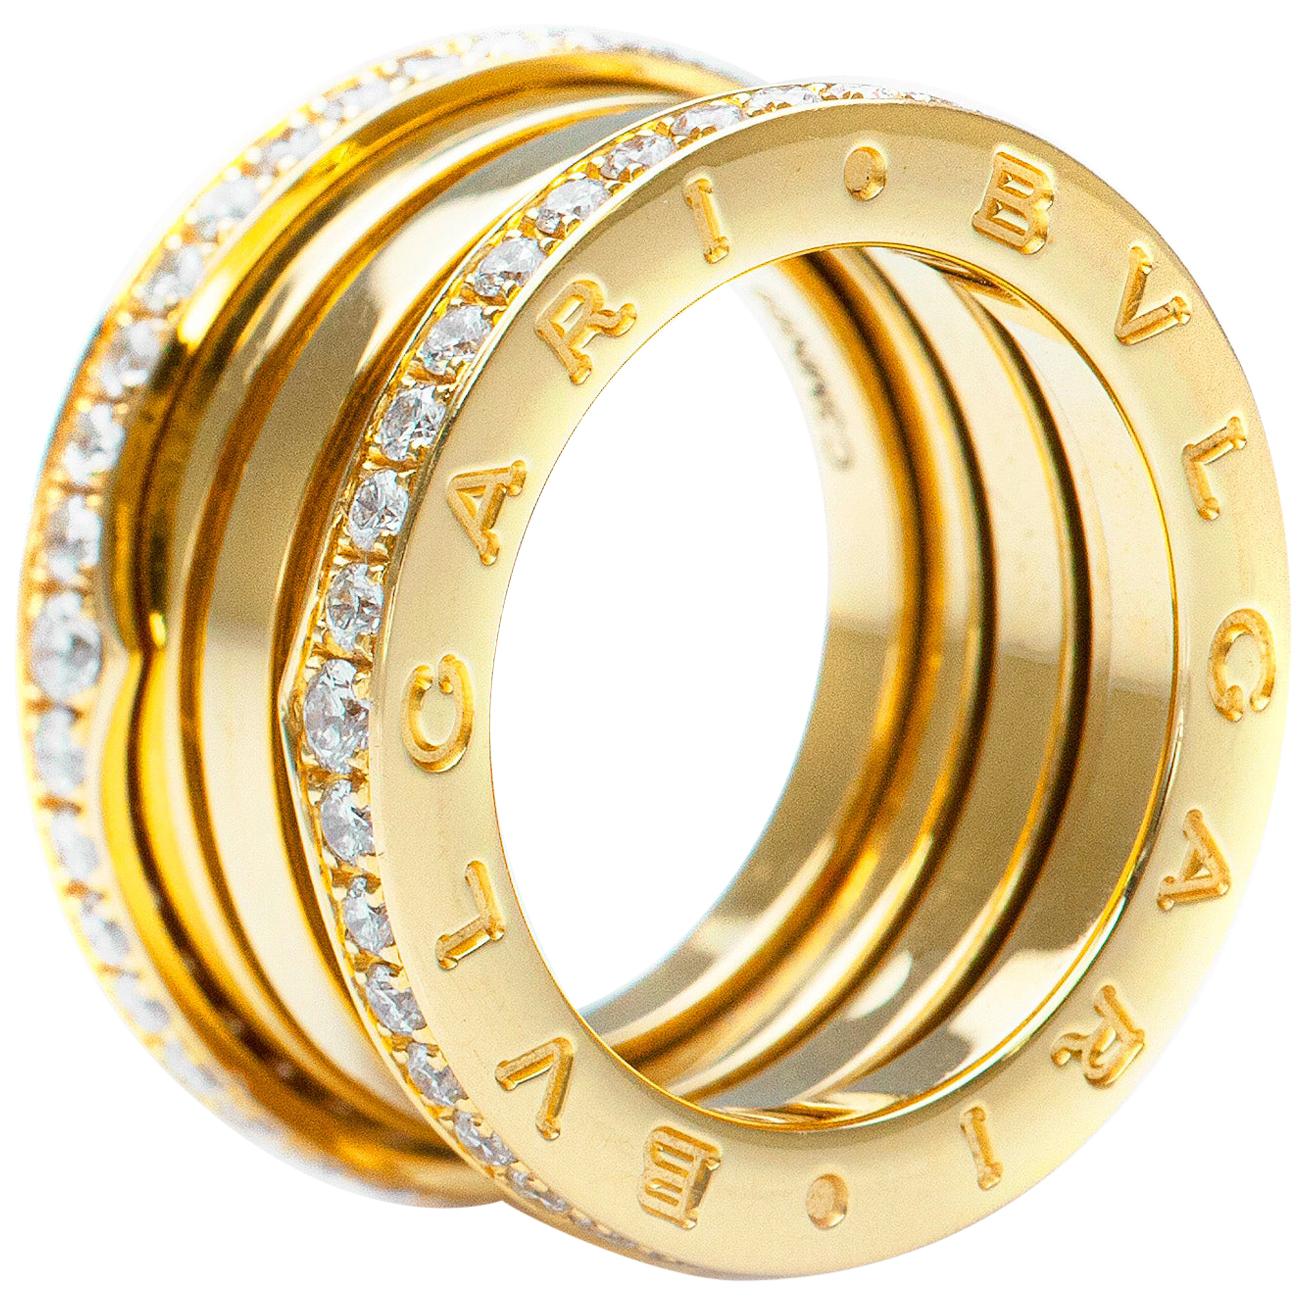 Bvlgari B. Zero 1 Four Band Yellow Gold, Set with Pavé Diamonds Ring